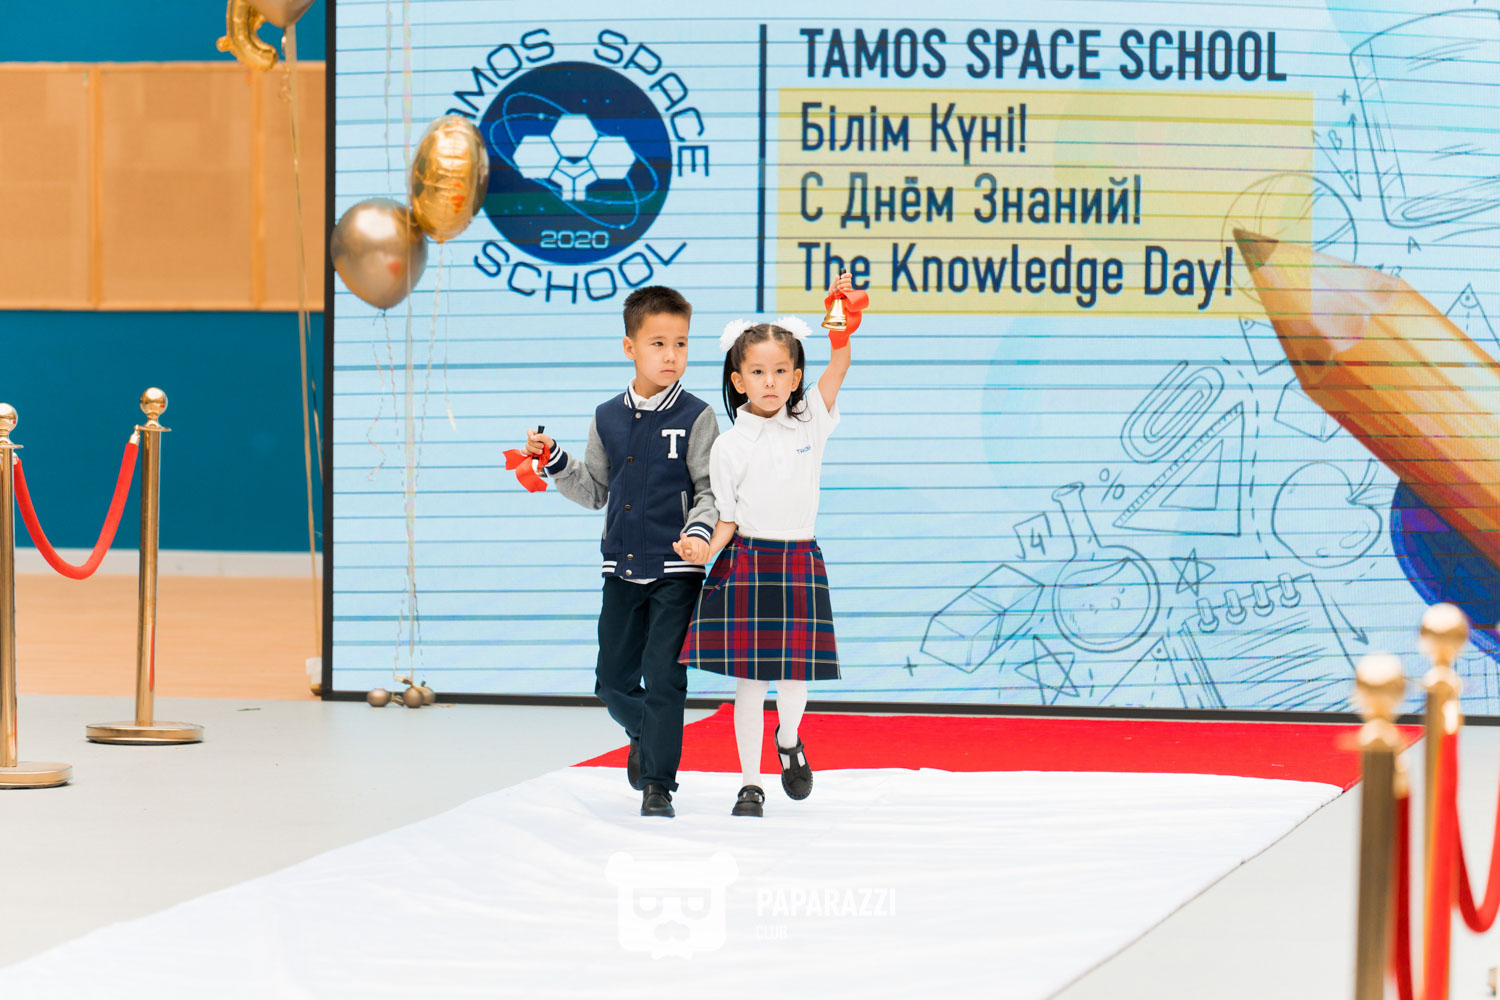 Tamos Space School